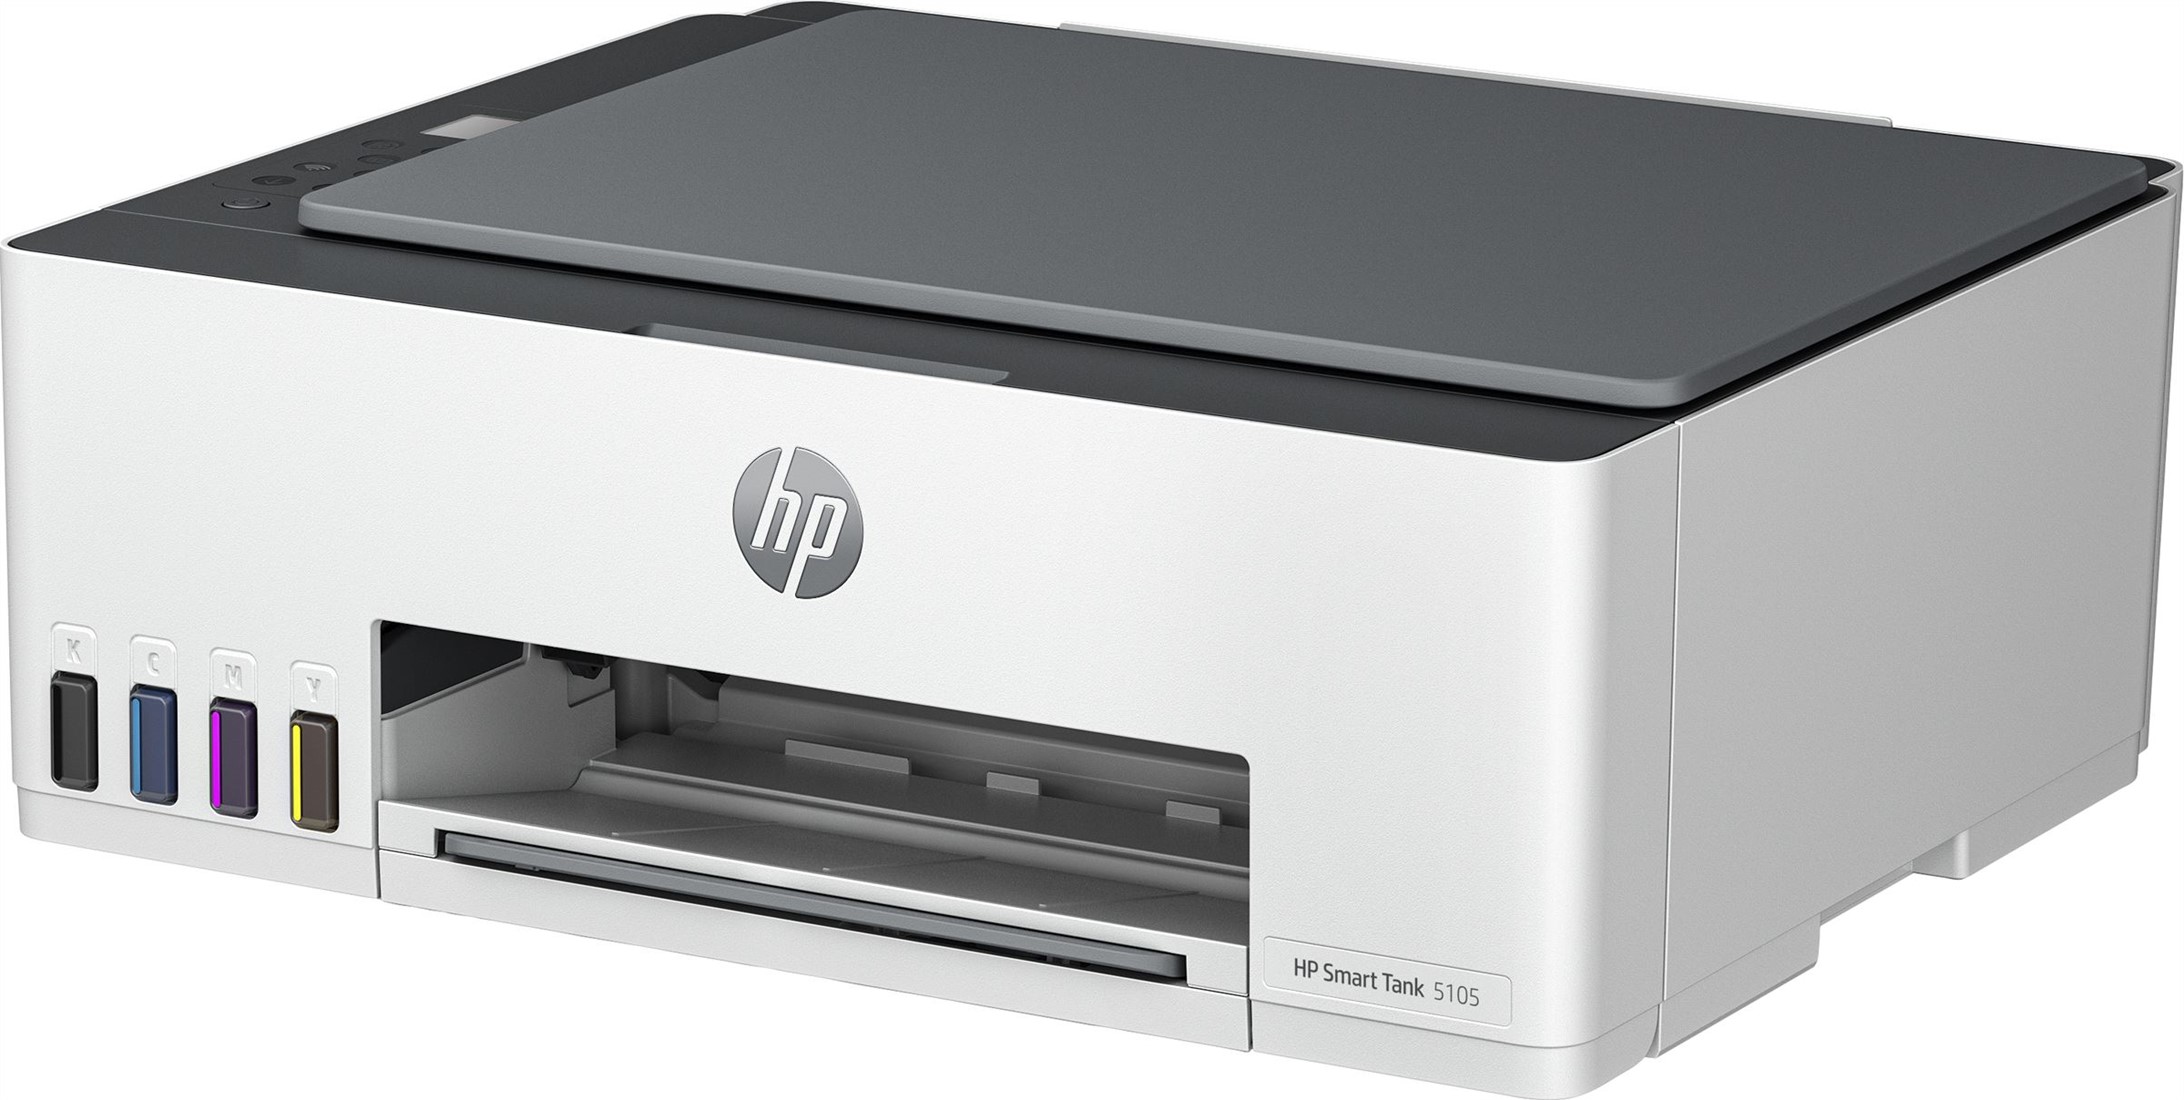 HP Smart Tank 5105 All-in-One-printer, Kleur, Printer voor Thuis en thuiskantoor, Printen, kopiëren, scannen, Draadloos; printertank voor grote volumes; printen vanaf telefoon of tablet; scannen naar bij